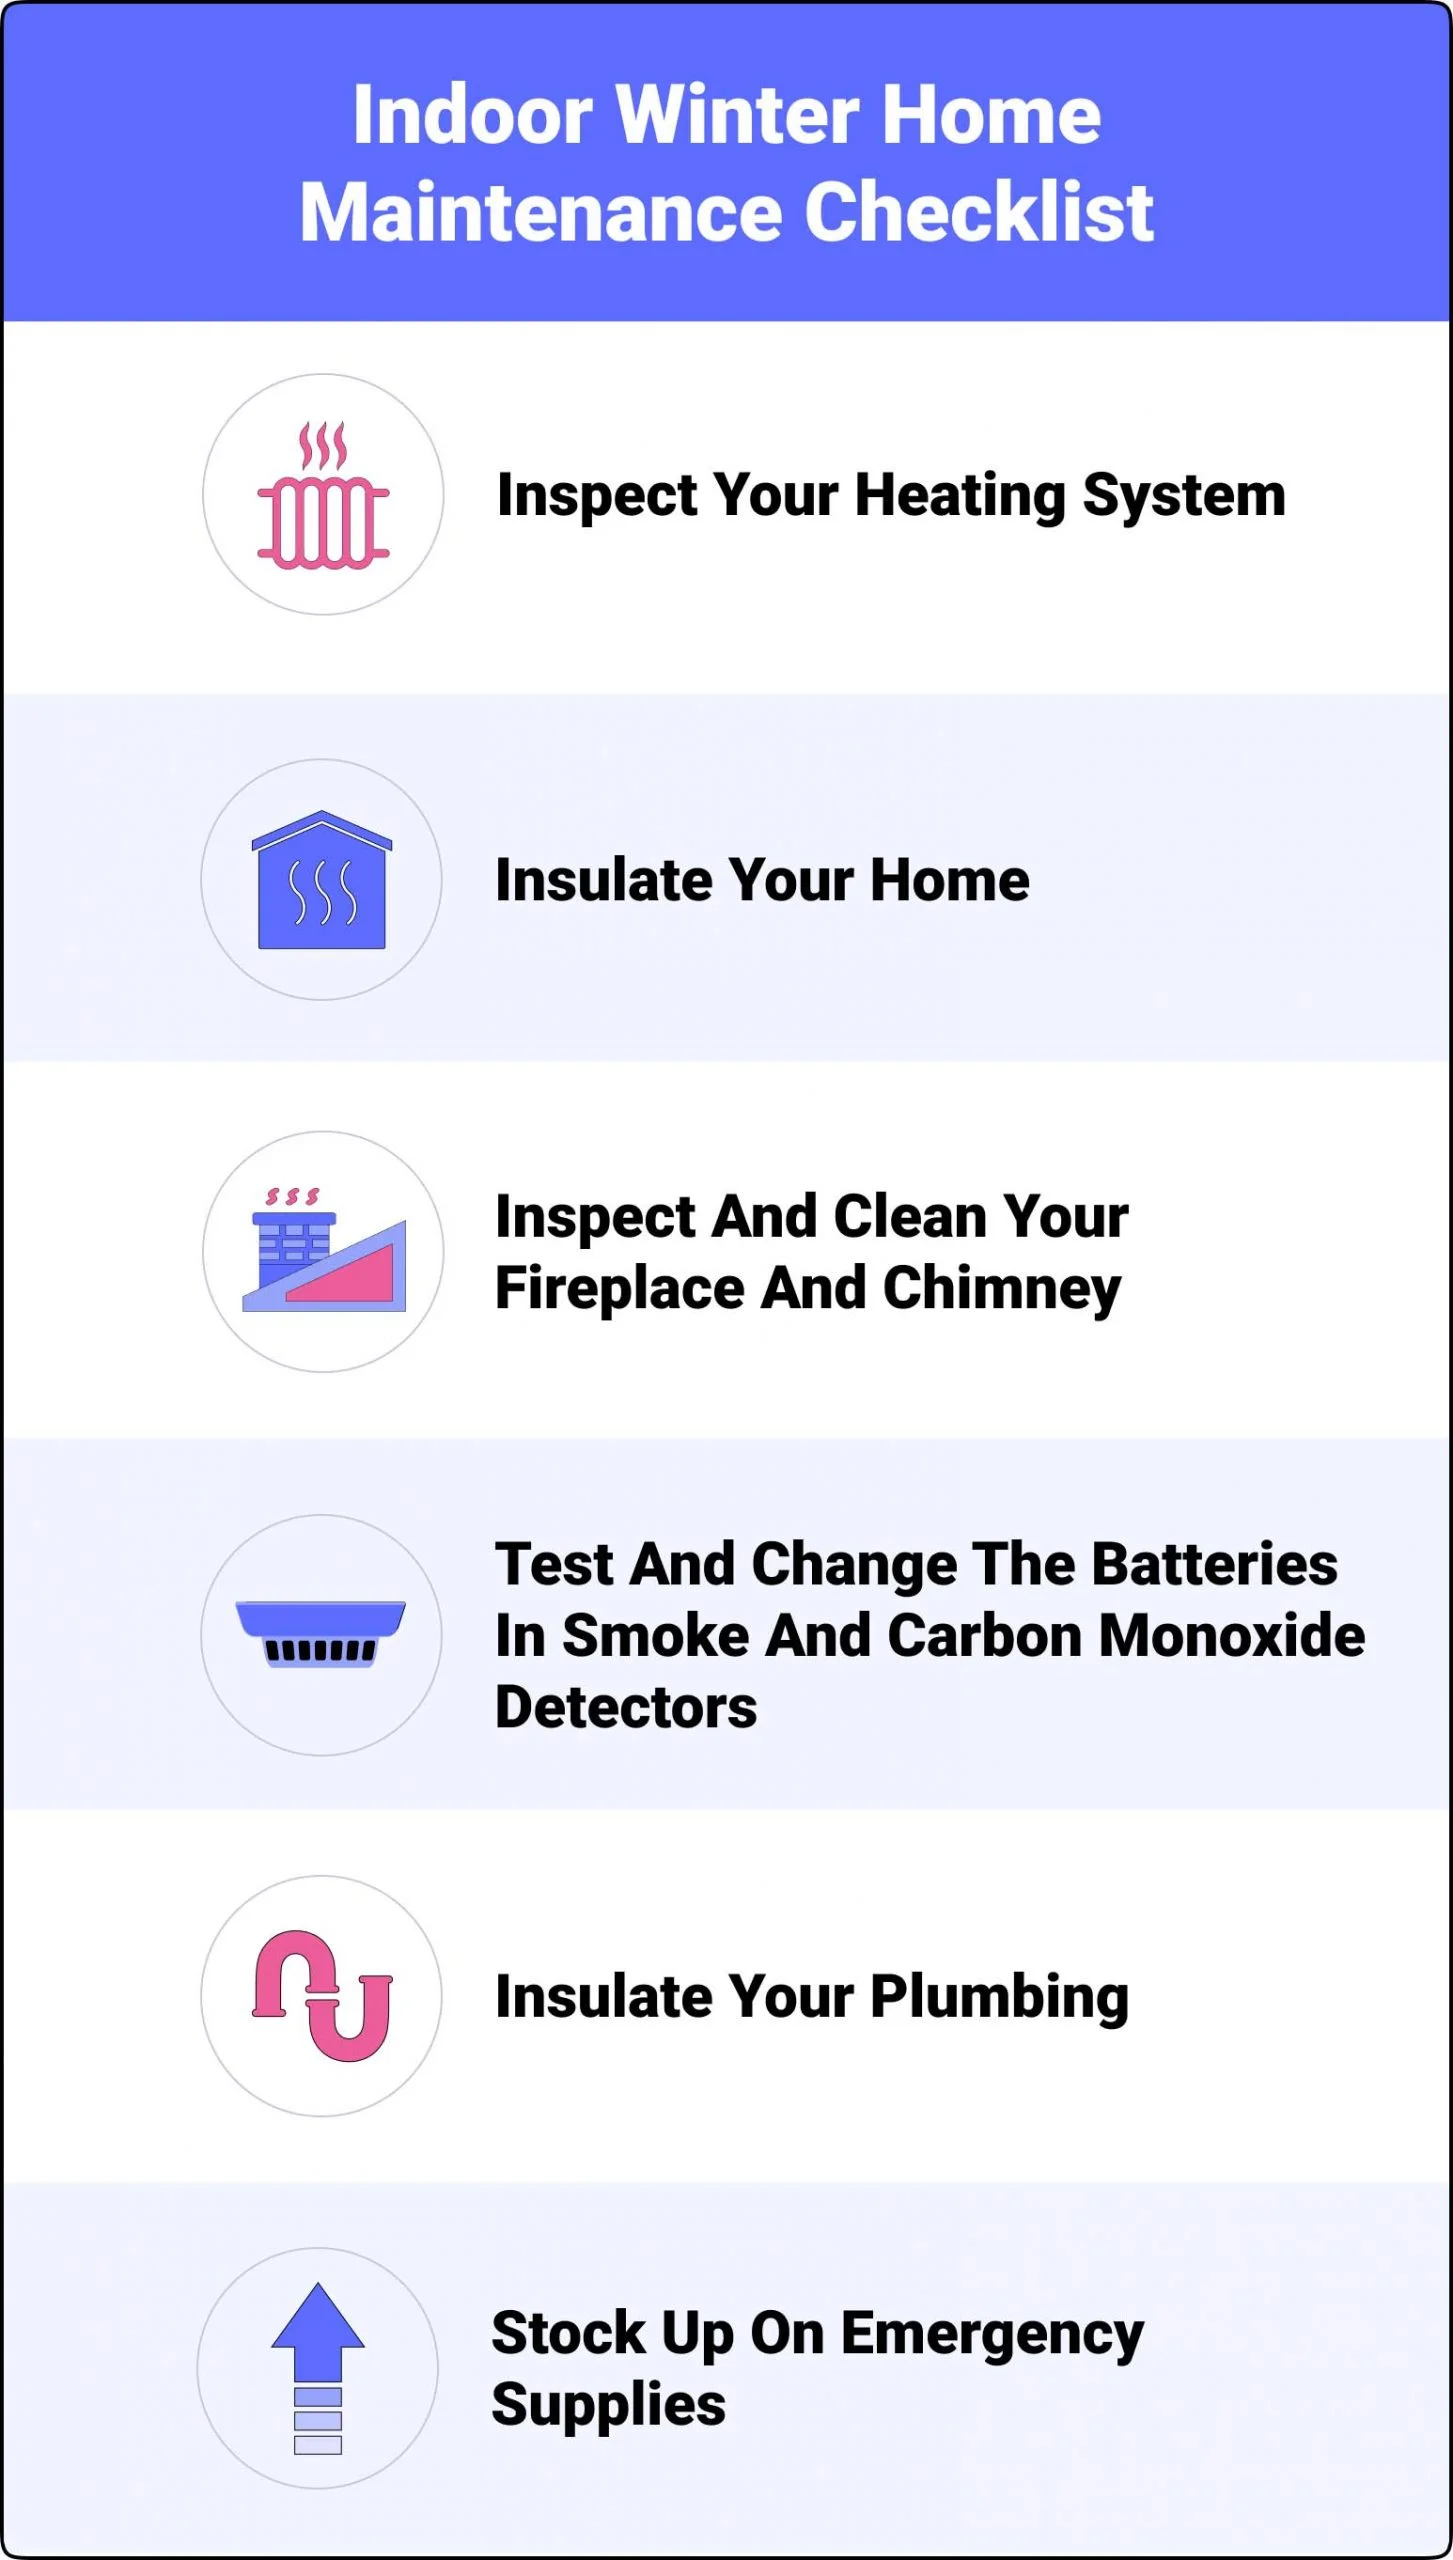 Interior Winter Home Maintenance Checklist